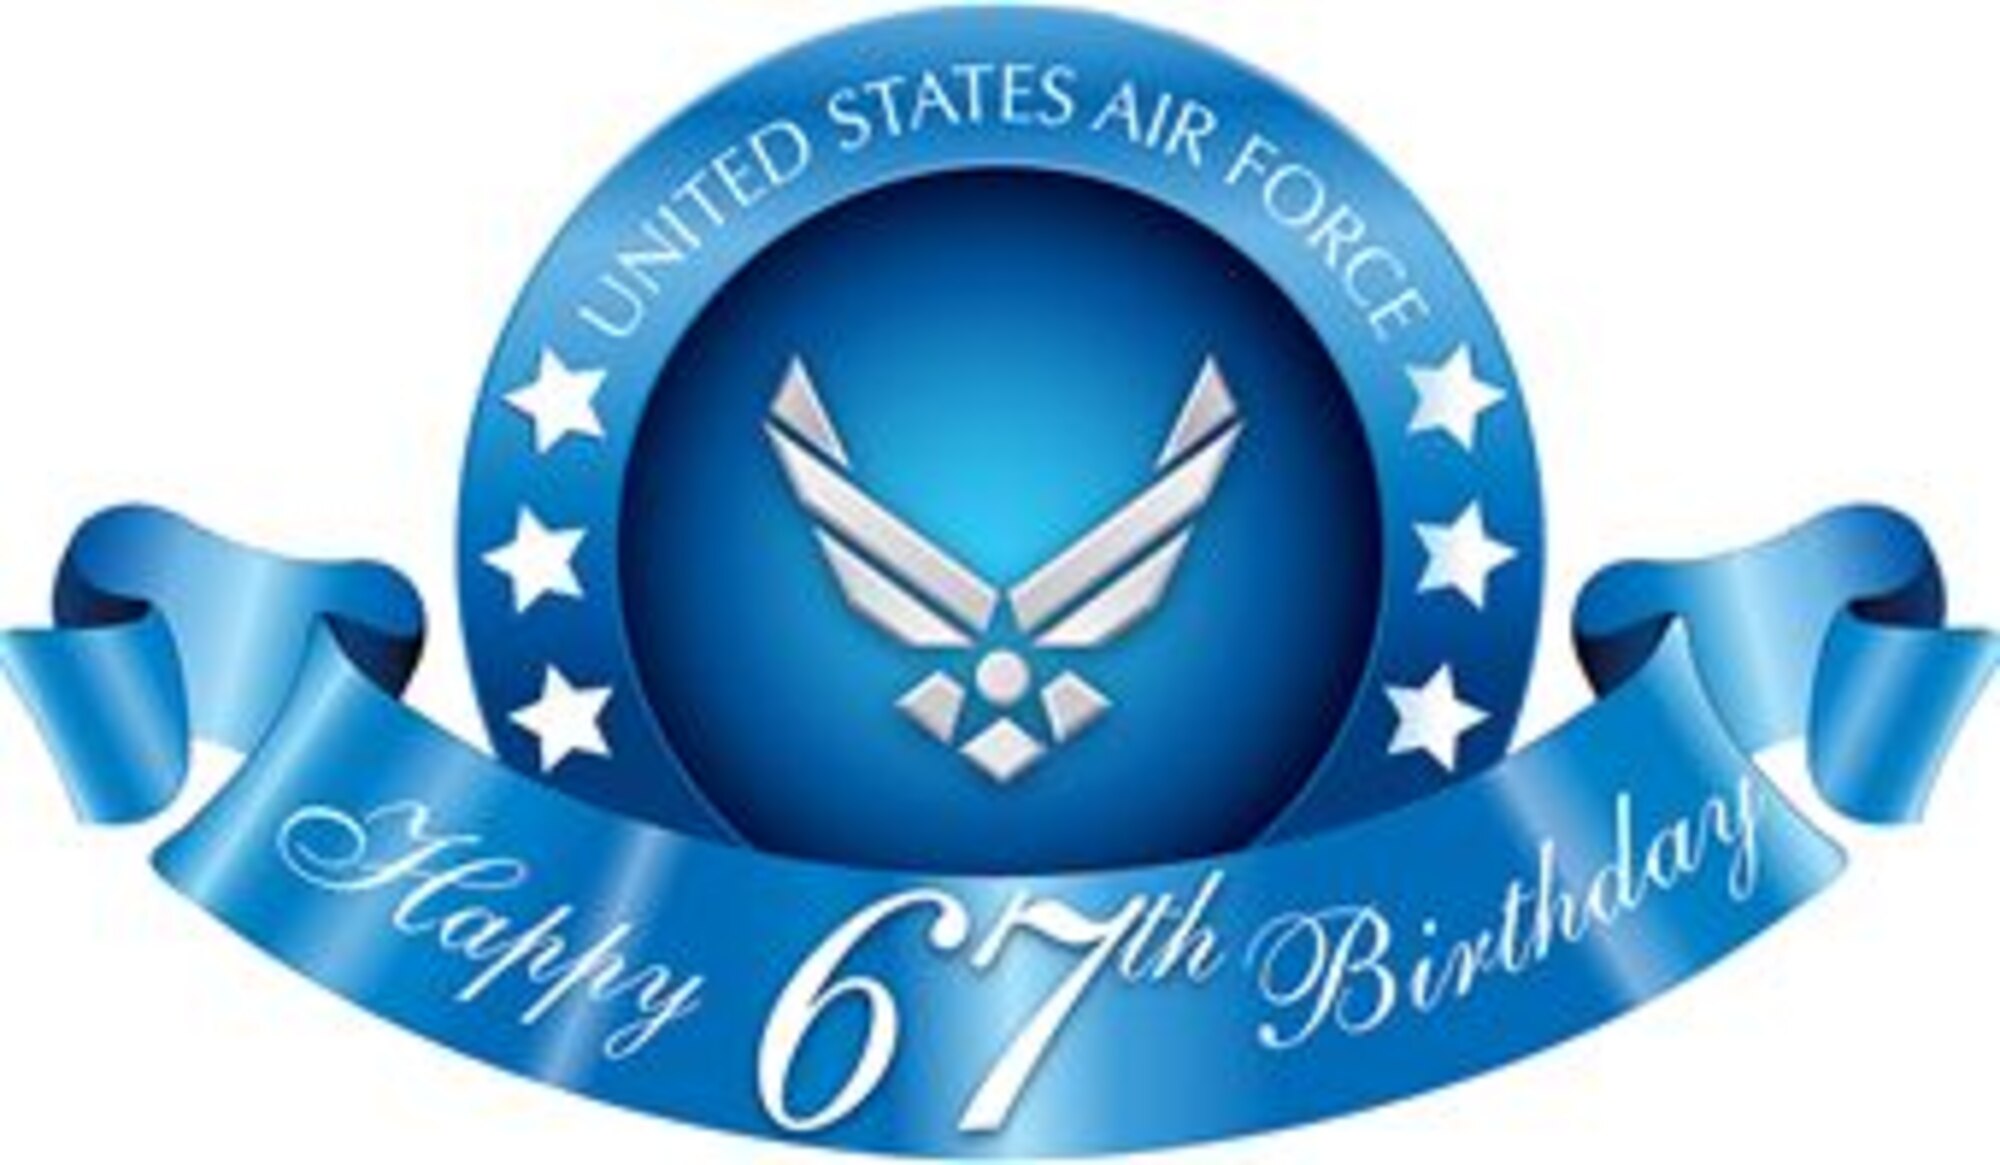 U.S. Air Force 67th Birthday